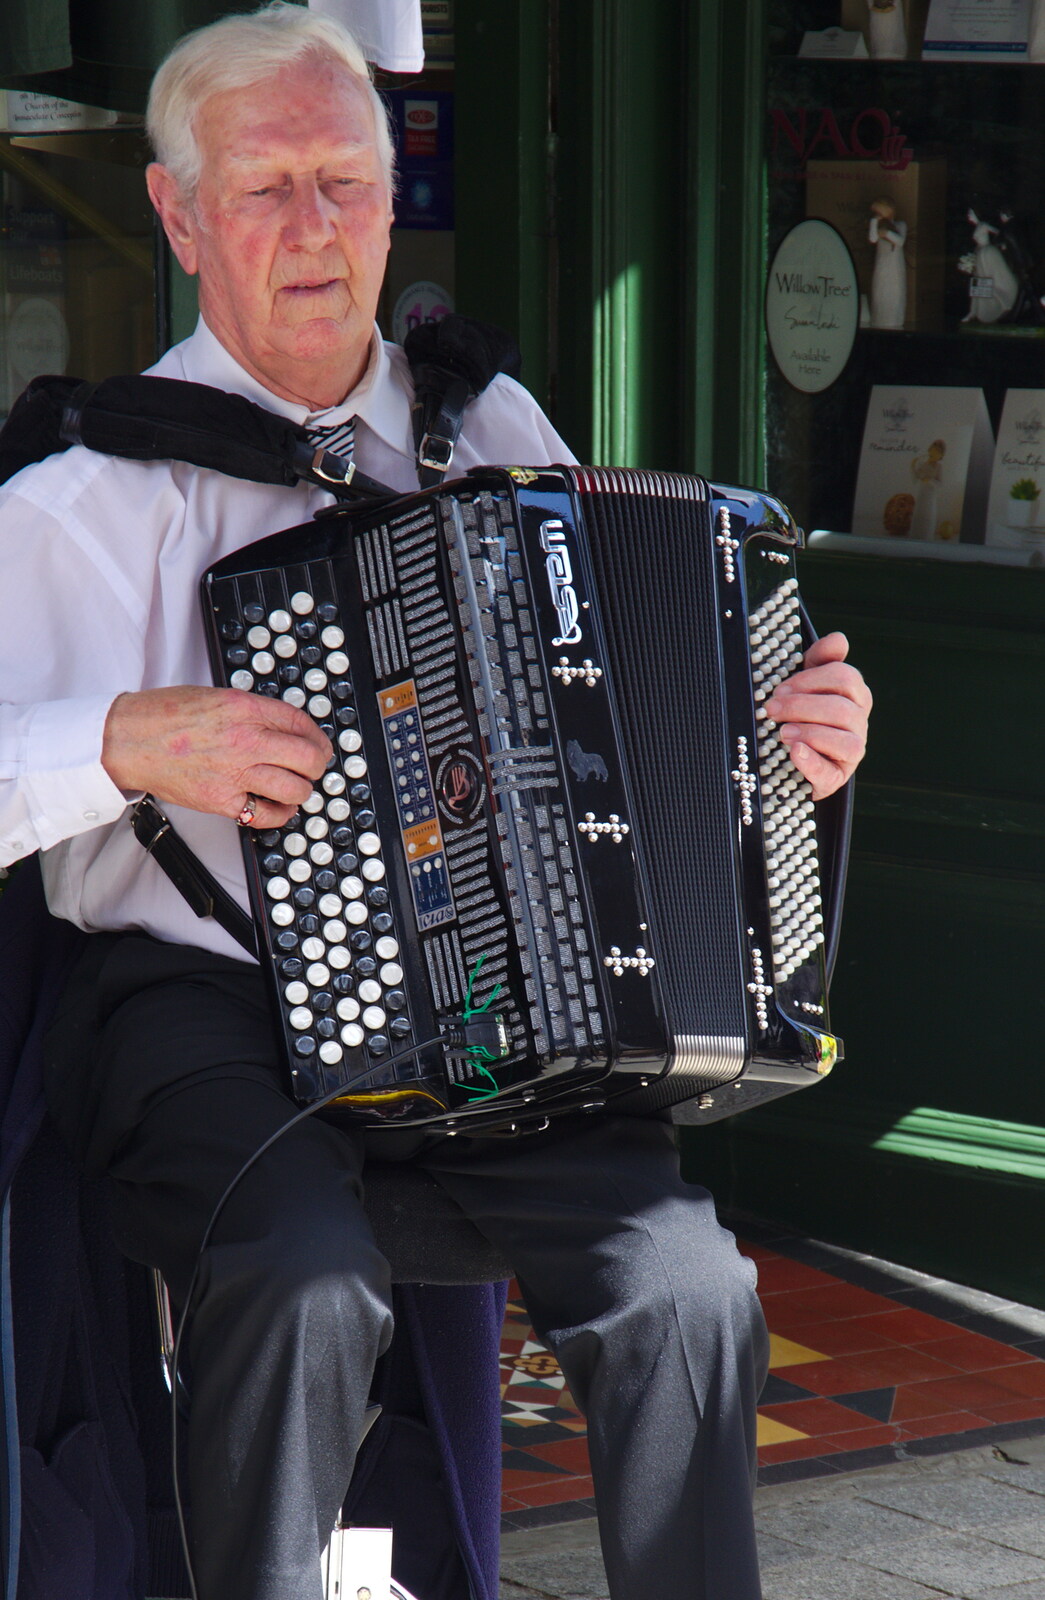 A bloke on an accordion from The Fleadh Cheoil na hÉireann, Droichead Átha, Co. Louth, Ireland - 13th August 2019